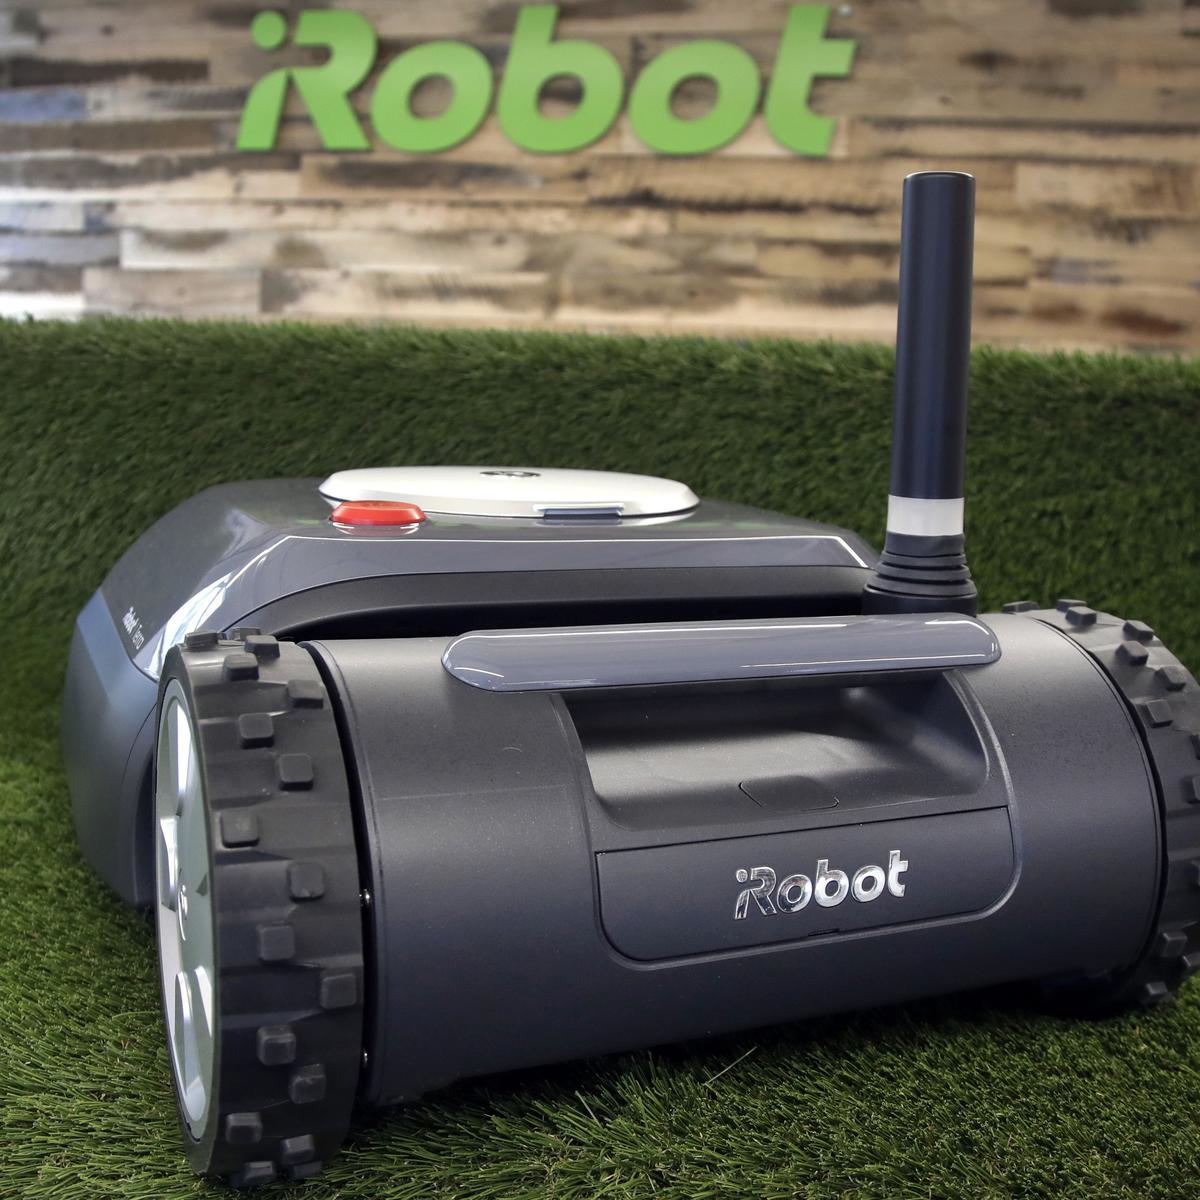 Roomba-Maker iRobot's Shares Plunge After EU Regulators Question